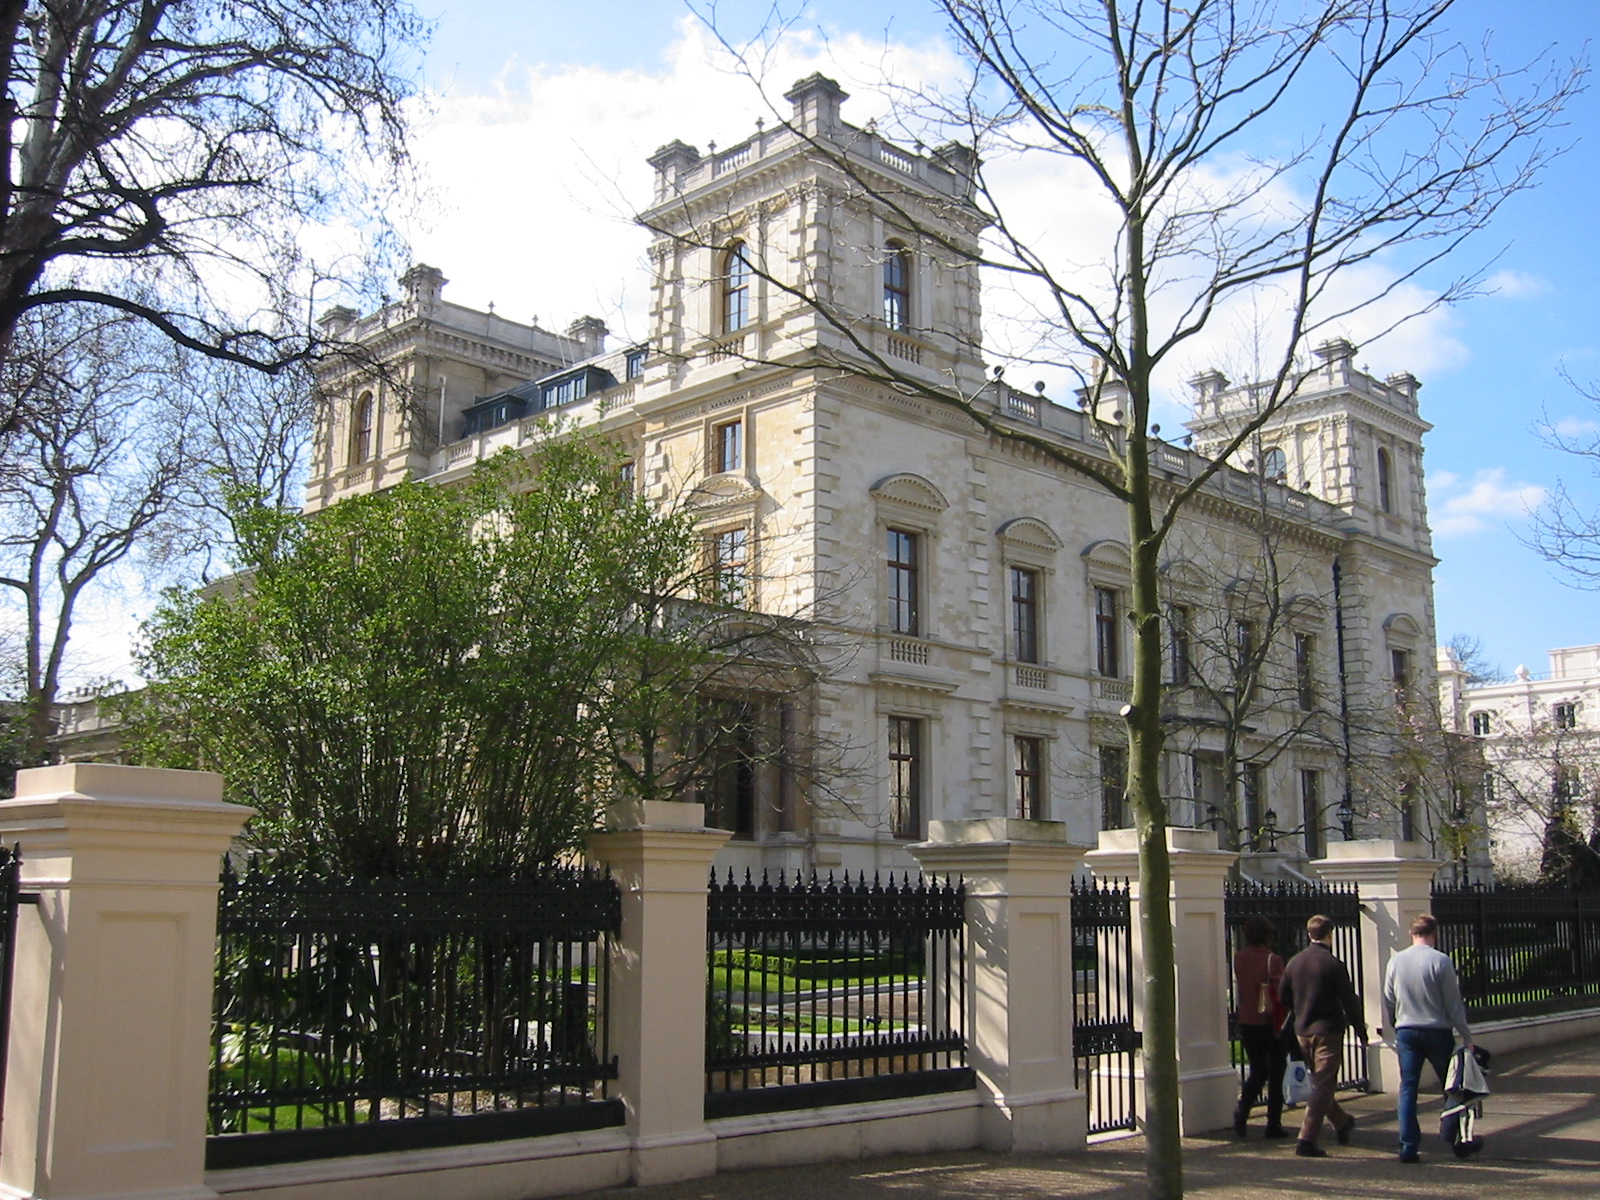 Kensington-Palace-Gardens